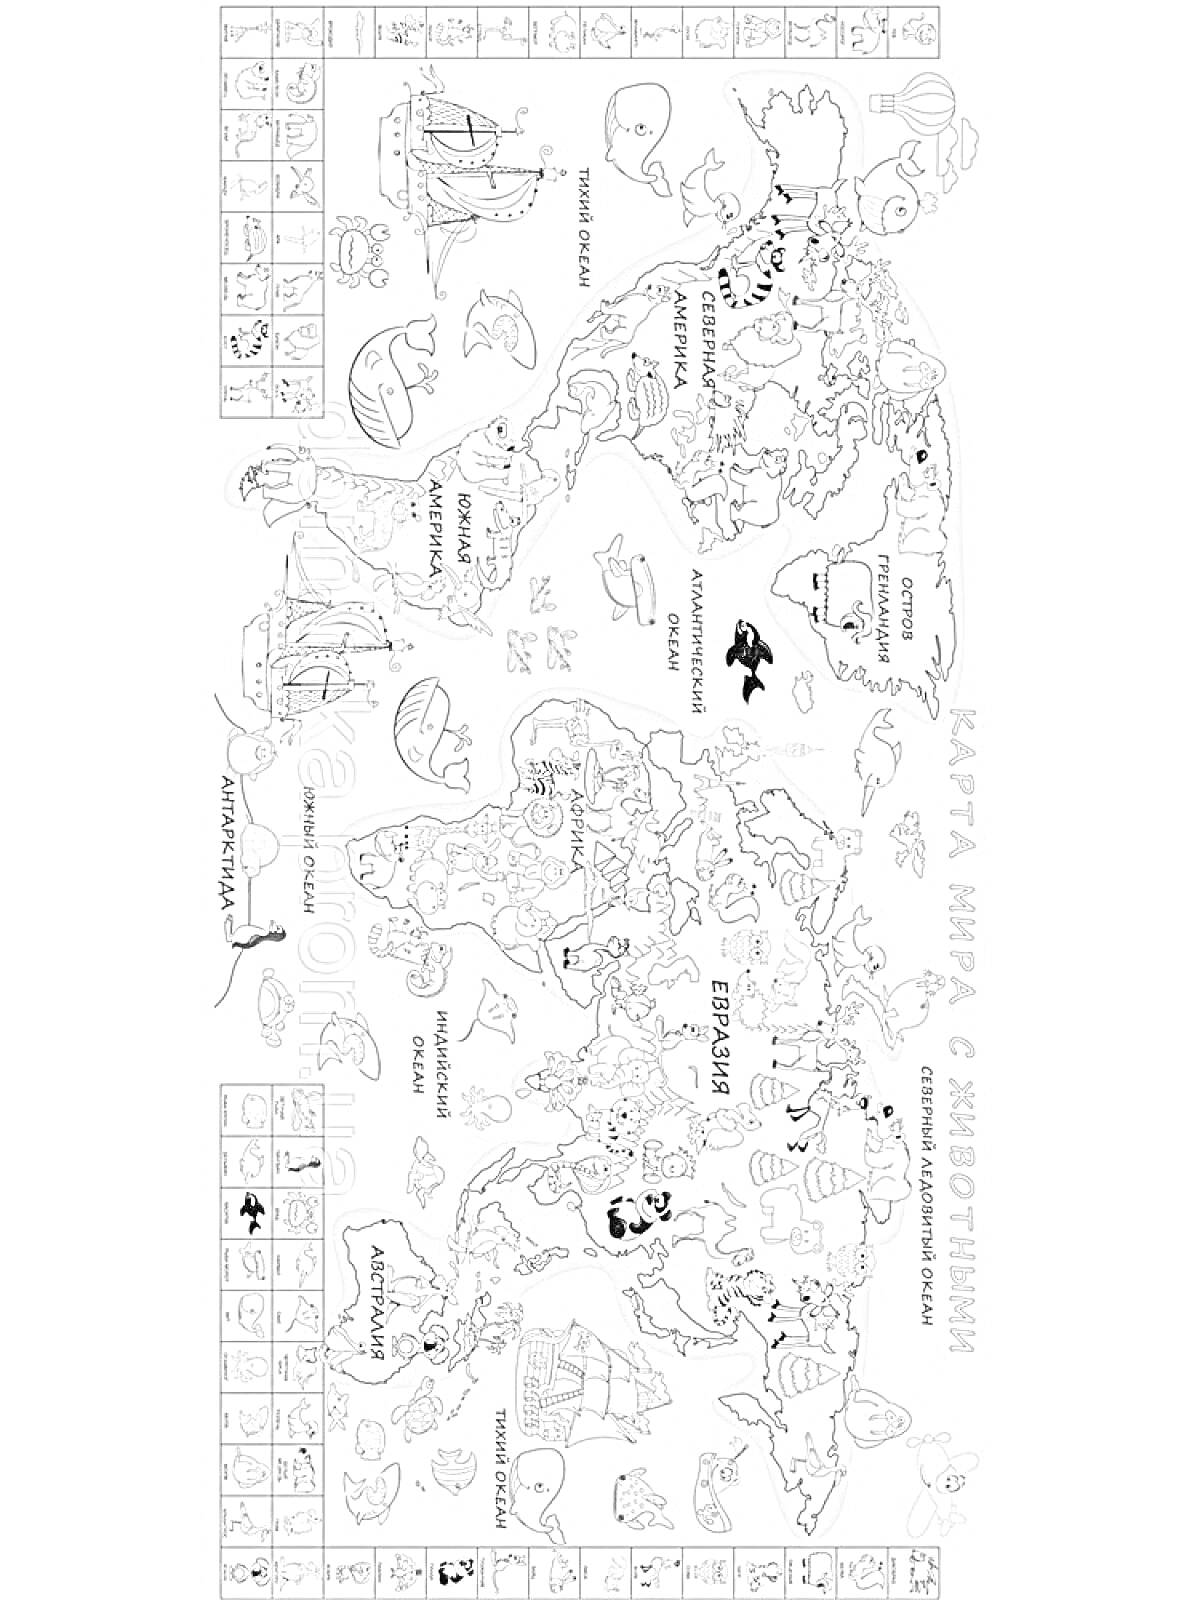 Карта мира с животными - раскраска. Детализированная карта мира с изображением континентов, стран, океанов и различных животных, обитающих в разных регионах мира. Вокруг карты одновременно размещены дополнительные рисунки животных и морских существ.